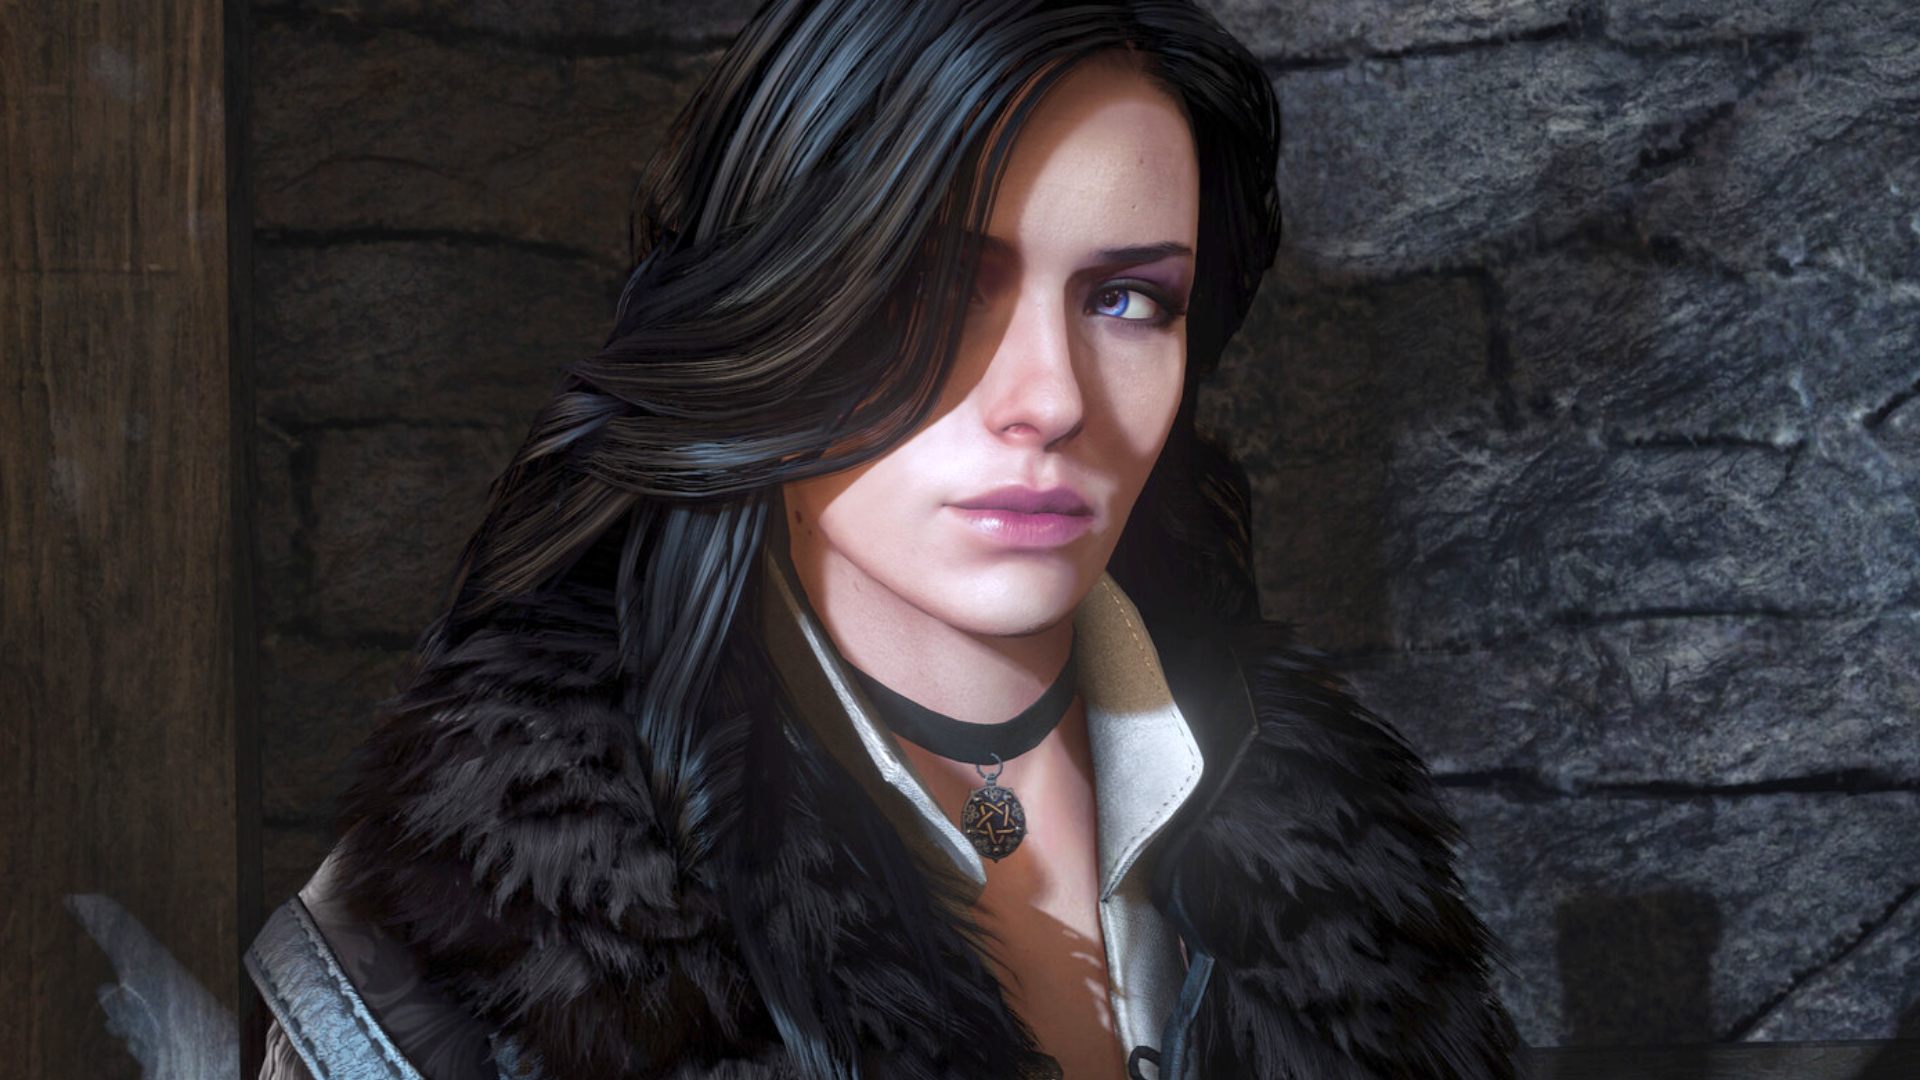 The Witcher 3: Vídeo compara versão PC no máximo e mínimo